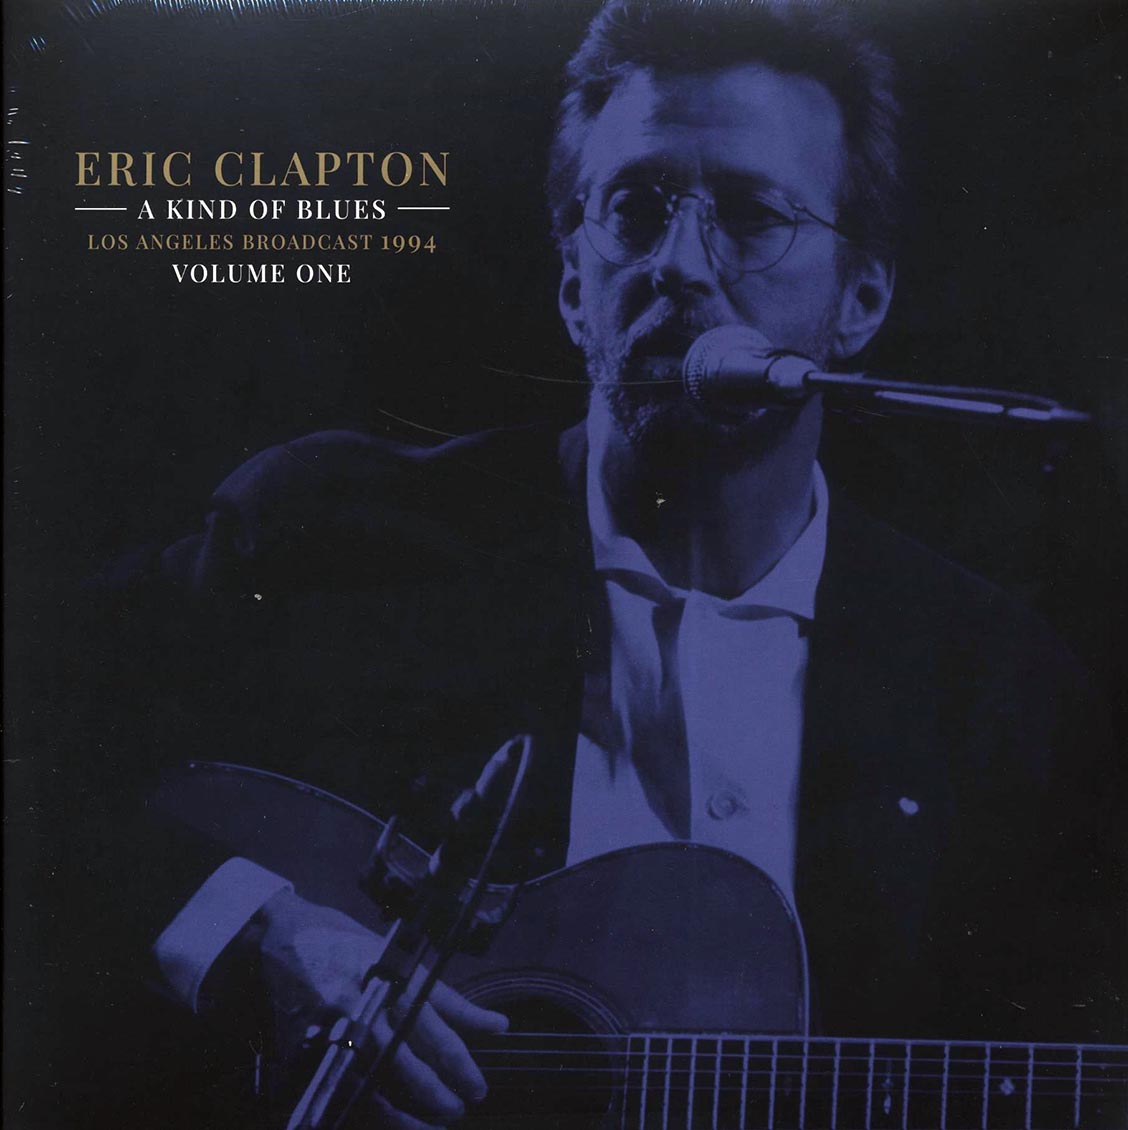 Eric Clapton - A Kind Of Blues Volume 1: Los Angeles Broadcast 1994 (2xLP) - Vinyl LP